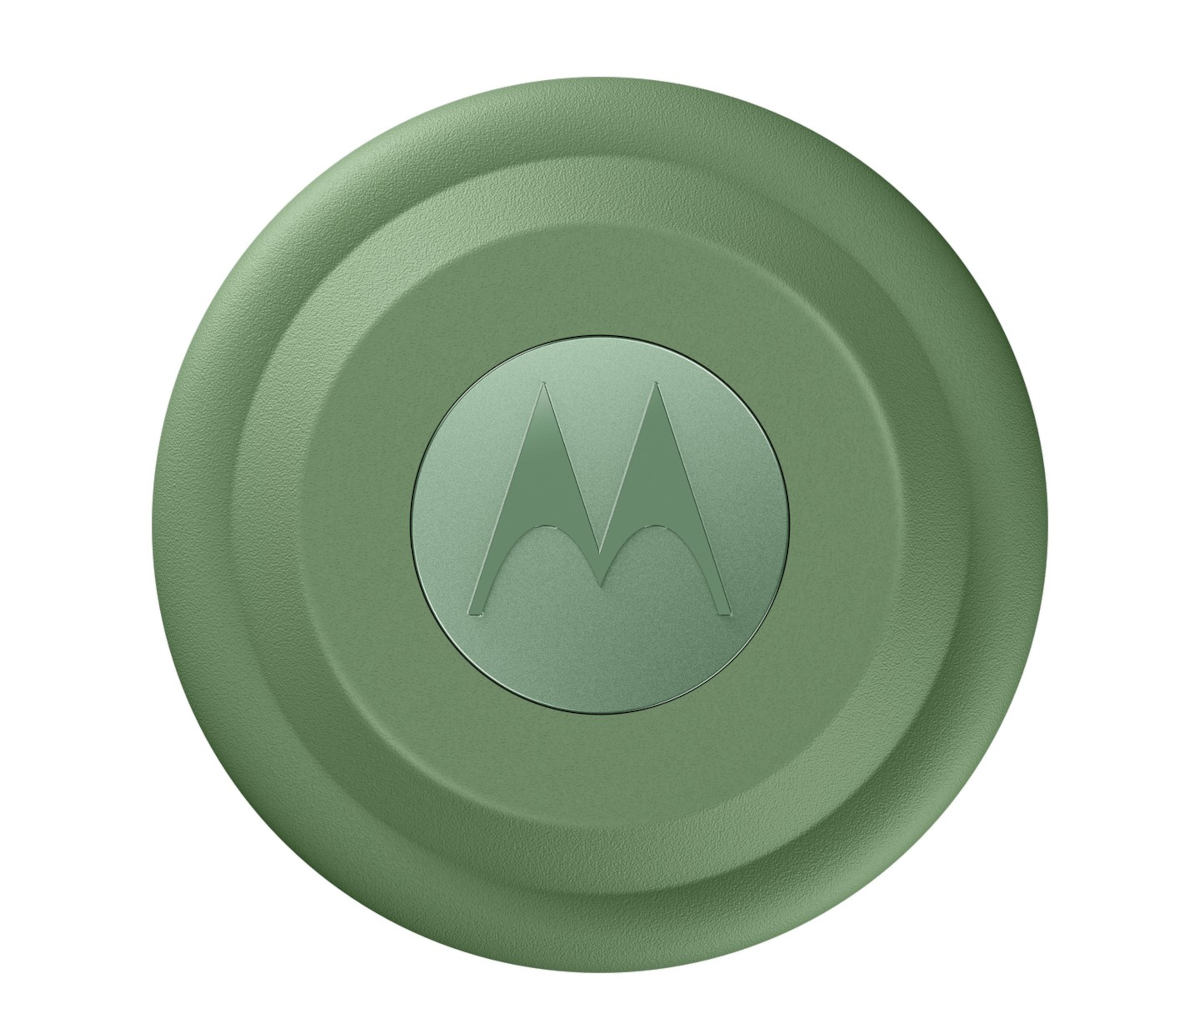 Motorola Moto Tag